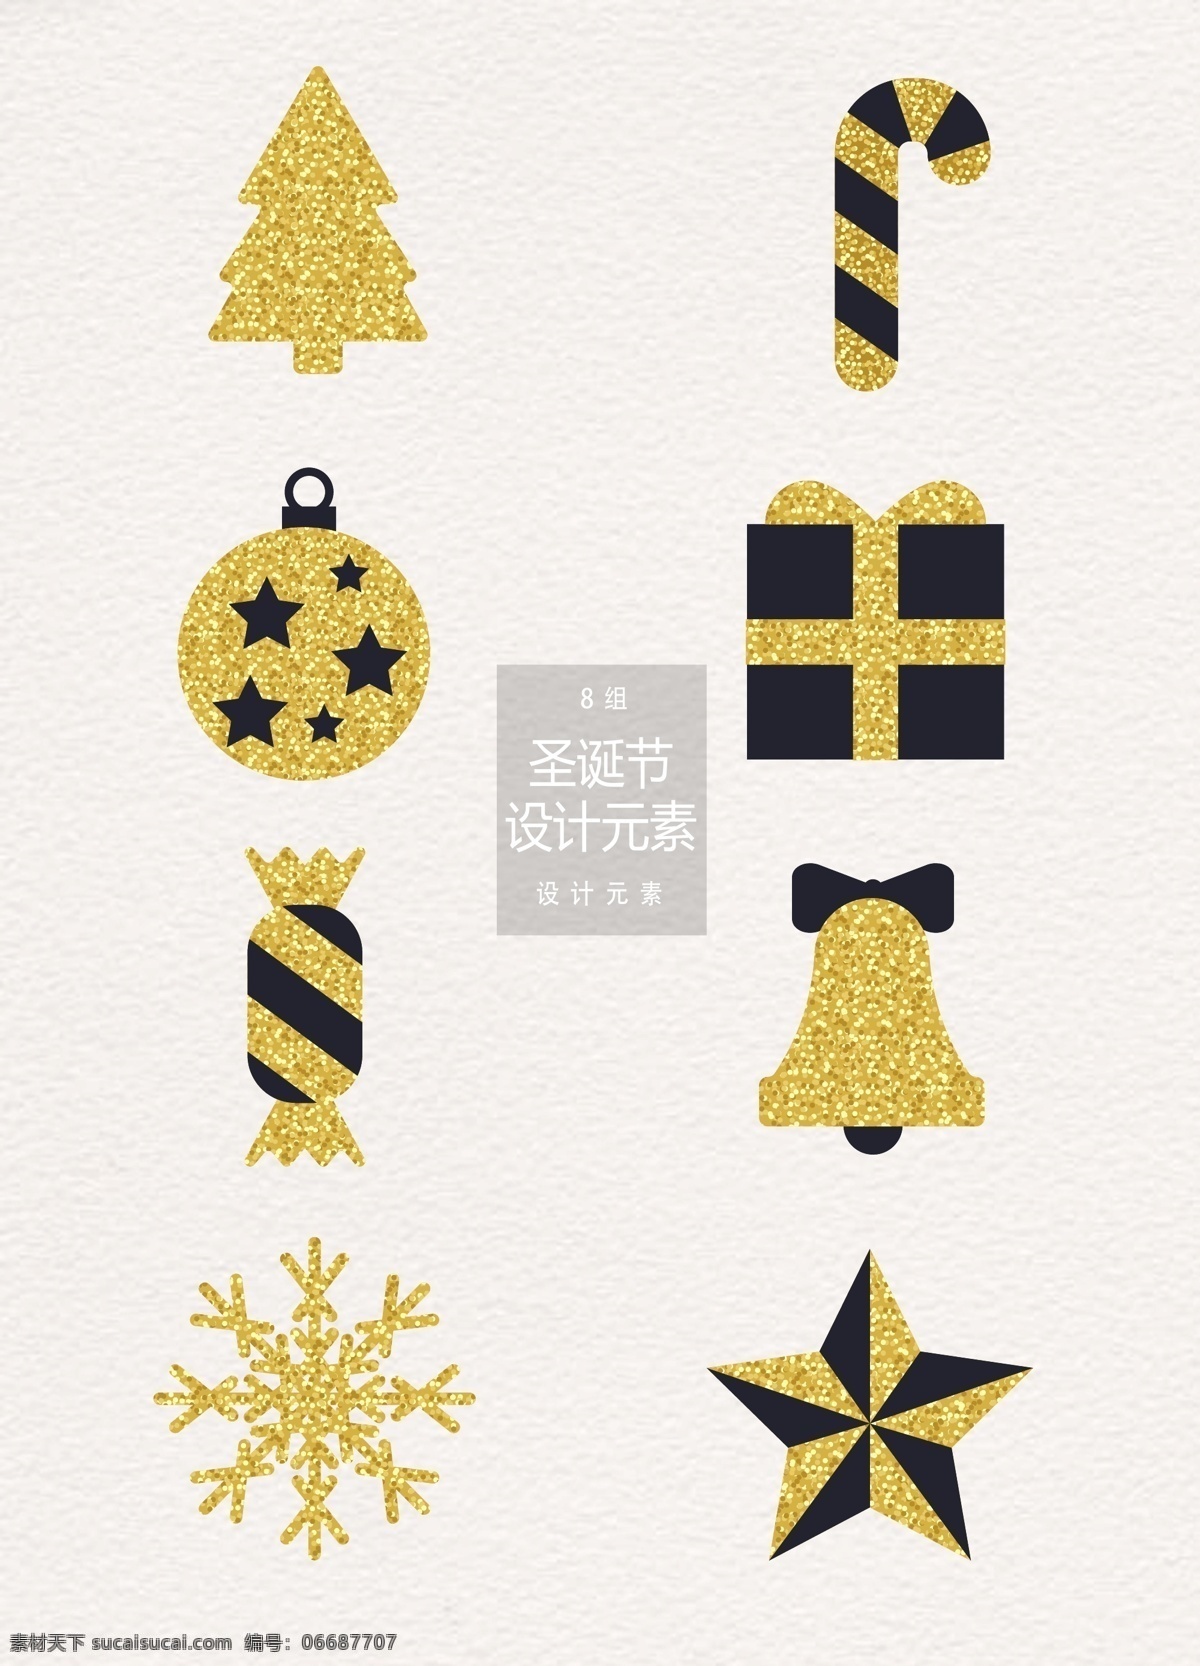 金色 圣诞节 装饰设计 元素 冬季 圣诞树 礼物 雪花 圣诞节装饰 金色装饰 圣诞 设计元素 圣诞球 礼物盒 铃铛 糖果